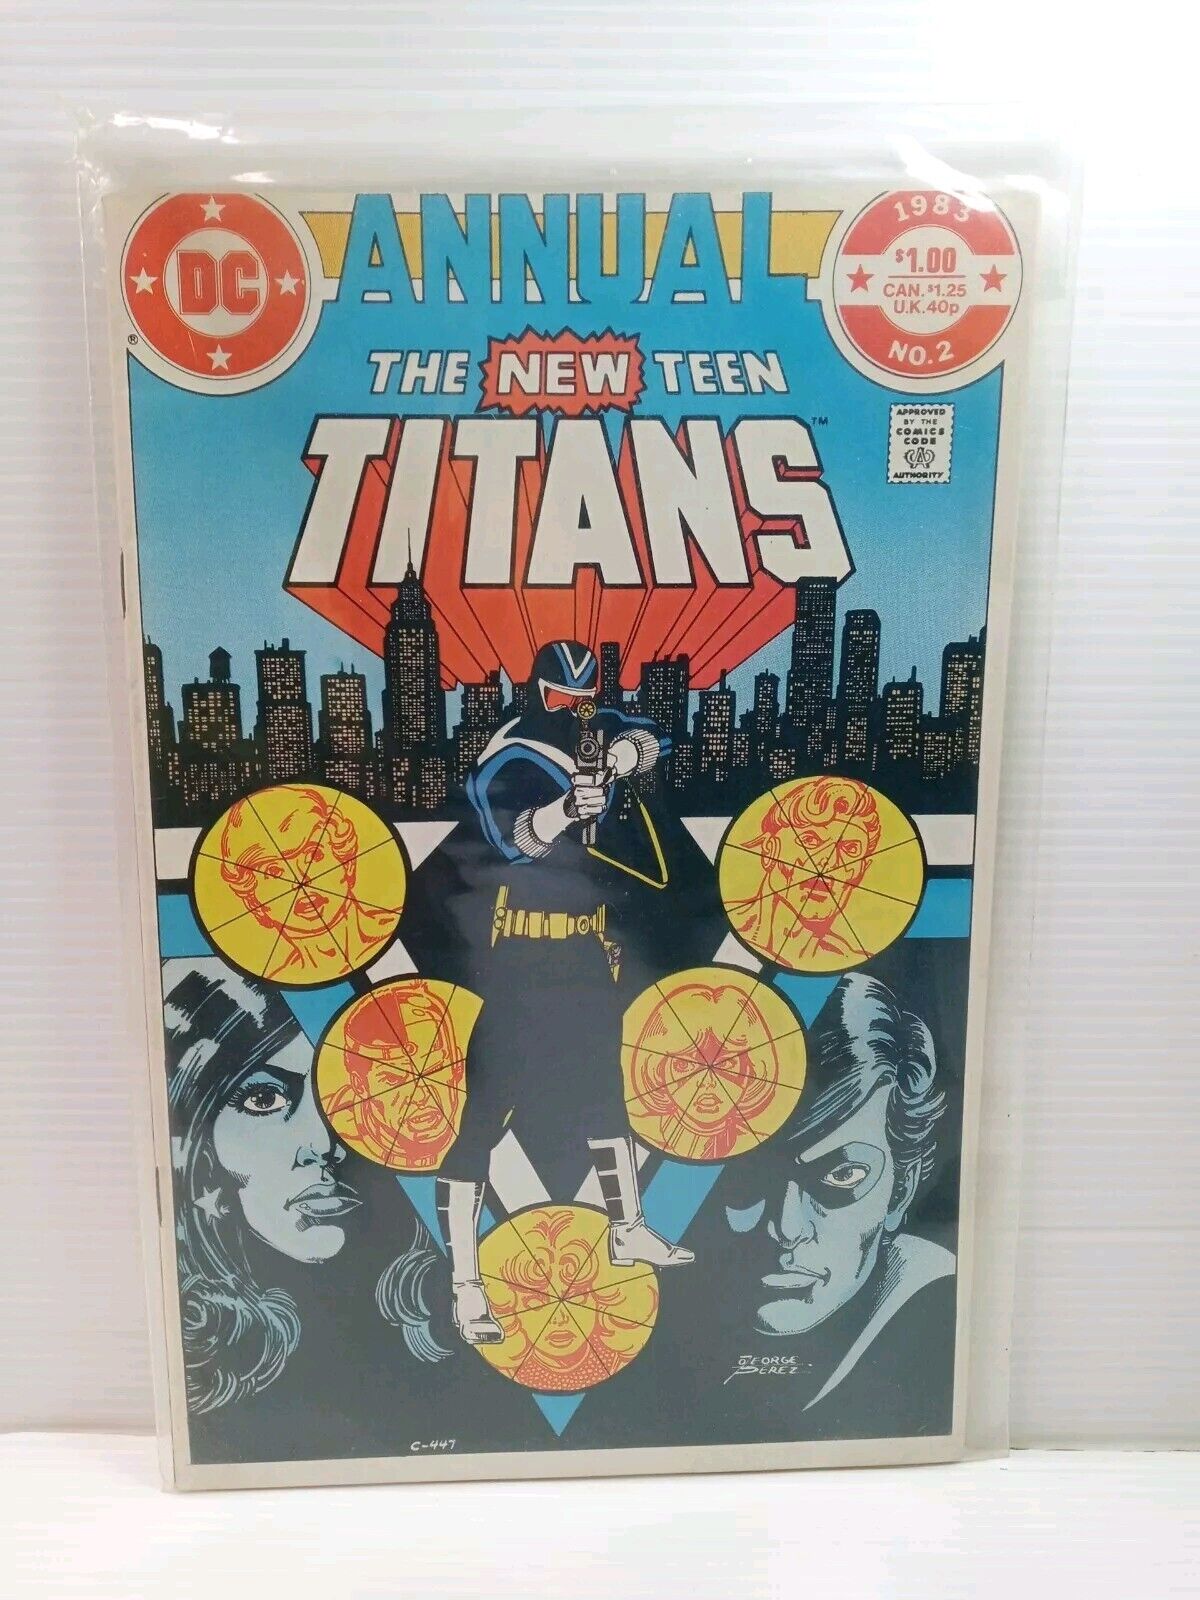 NEW TEEN TITANS ANNUAL #2 DC COMICS 1983 1ST APPEARANCE OF VIGILANTE